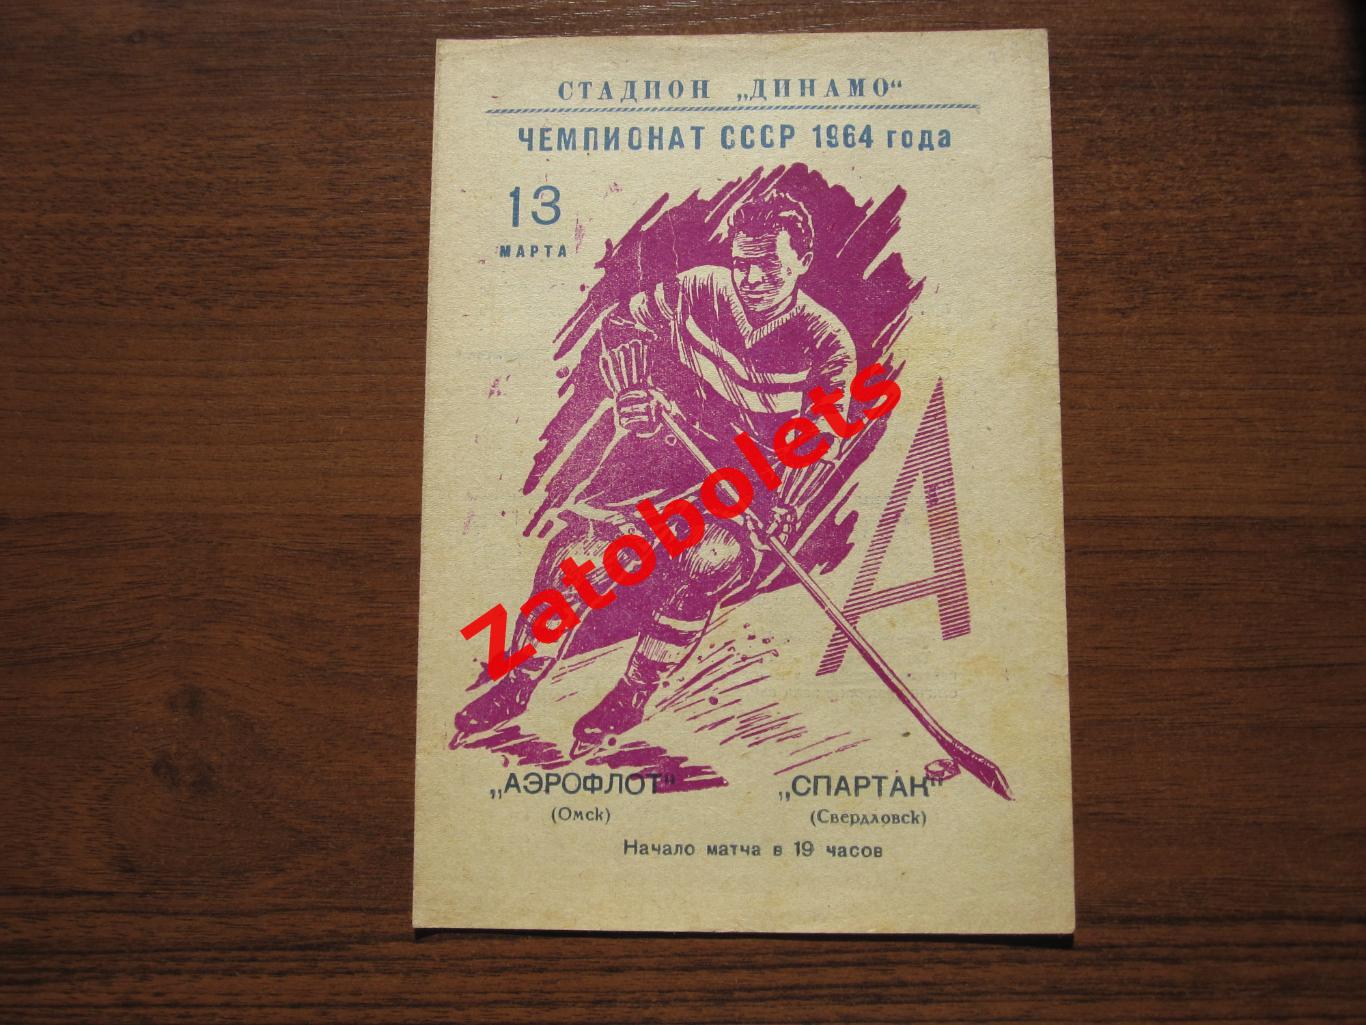 Аэрофлот Омск - Спартак Свердловск 13.03.1964